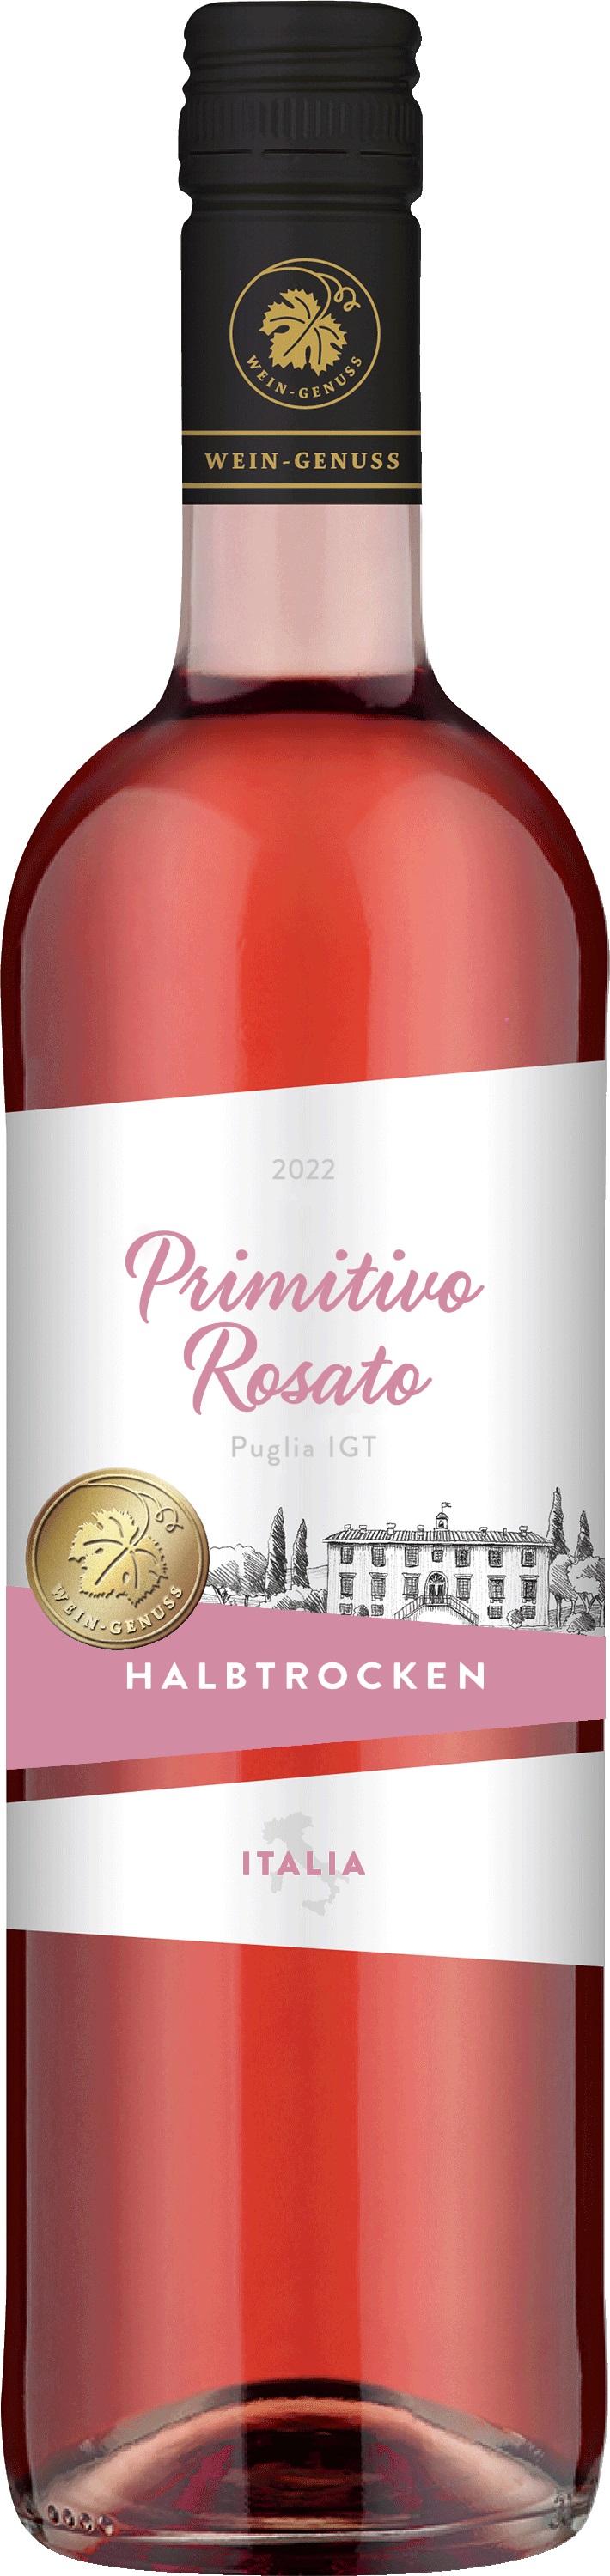 Wein-Genuss Primitivo Rosato Roséwein IGT Puglia